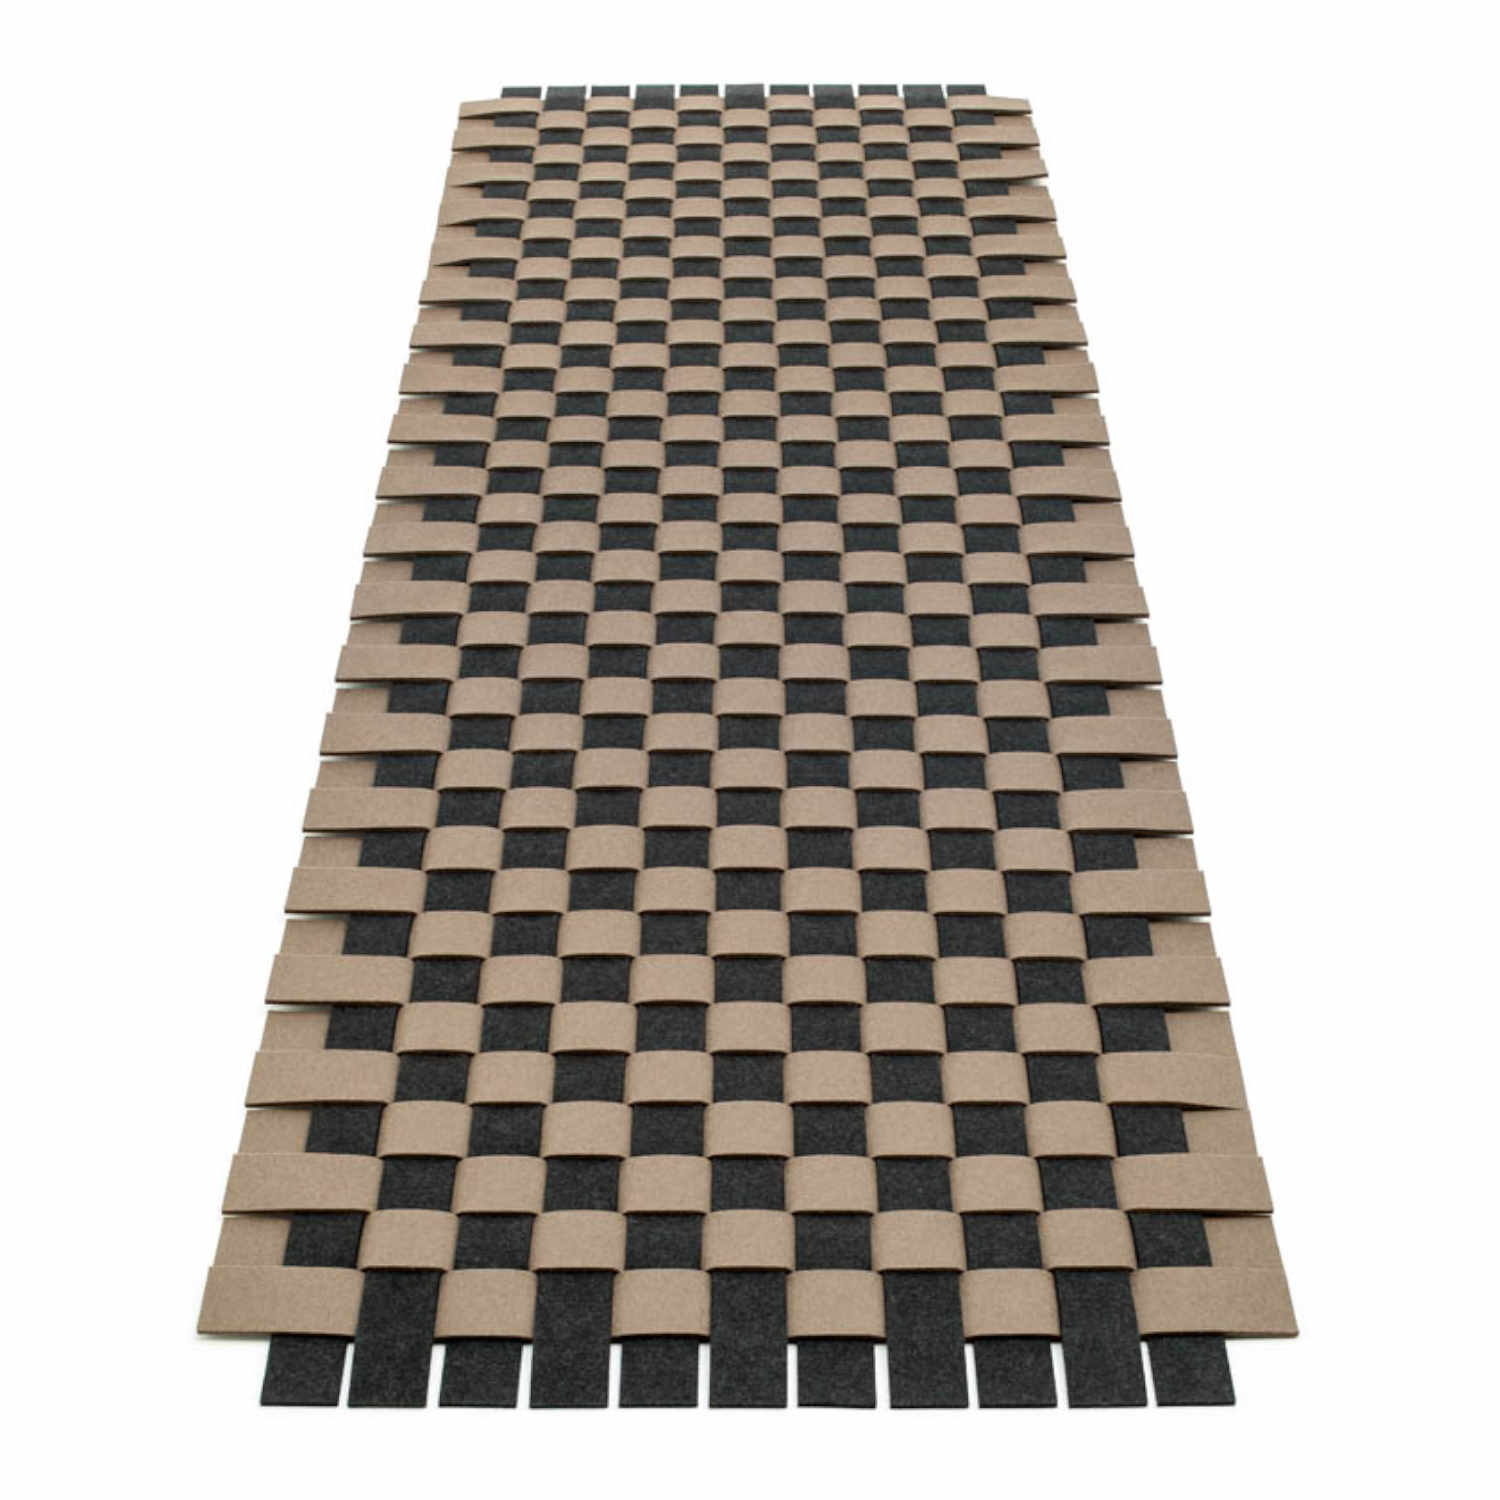 Teppichgeflecht 5 Teppich, Farbe deep water, Farbe 2 taubengrau 17, Grösse 185 × 245 cm von HEY-SIGN